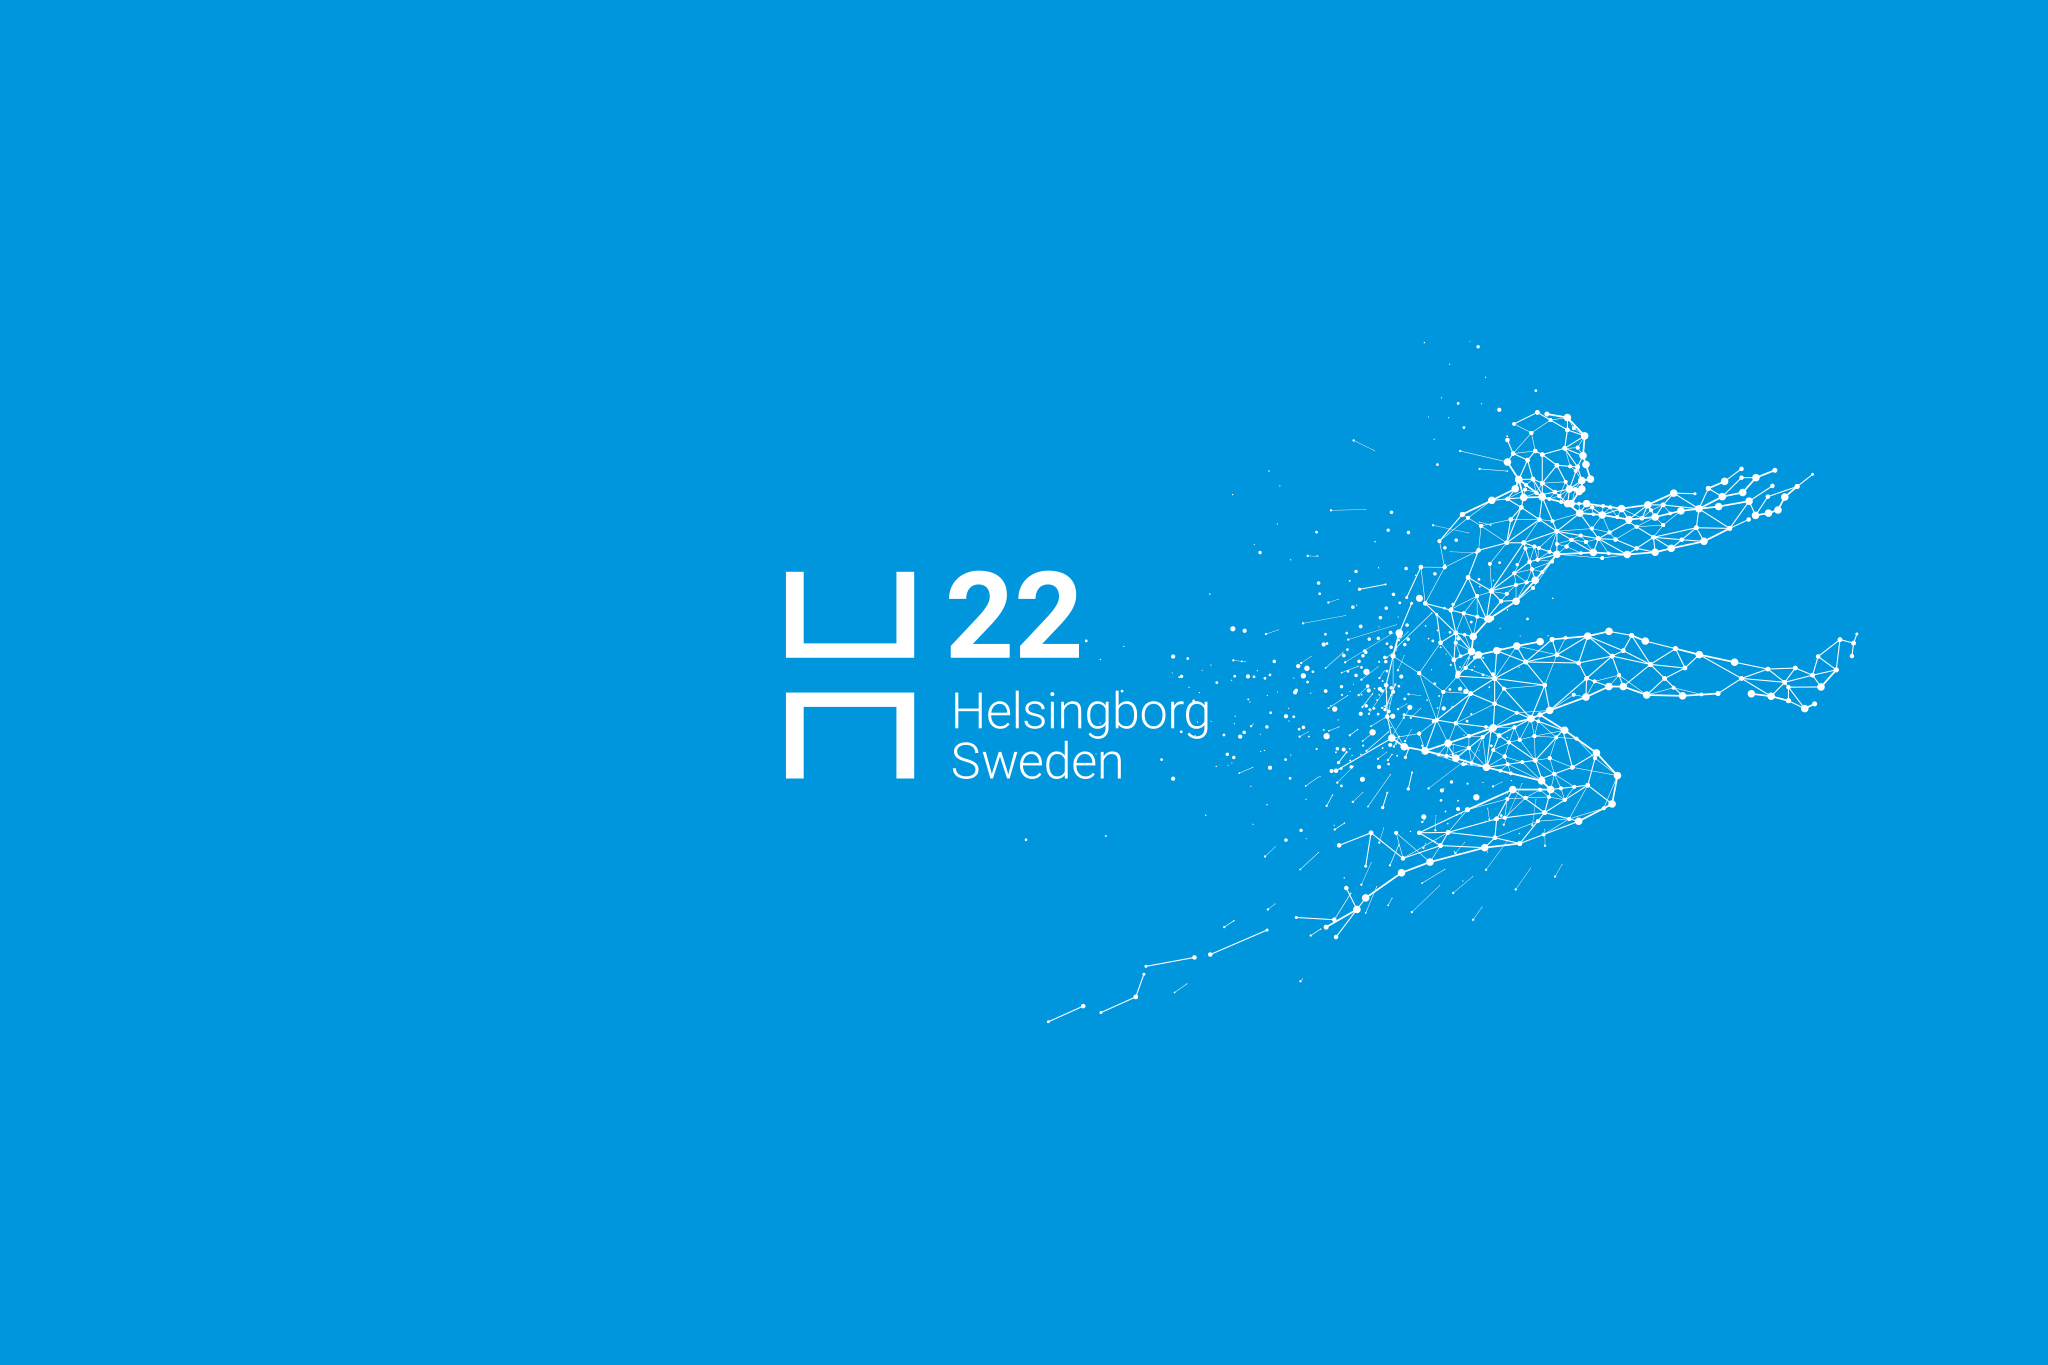 H22 Helsingborg Sweden illustration